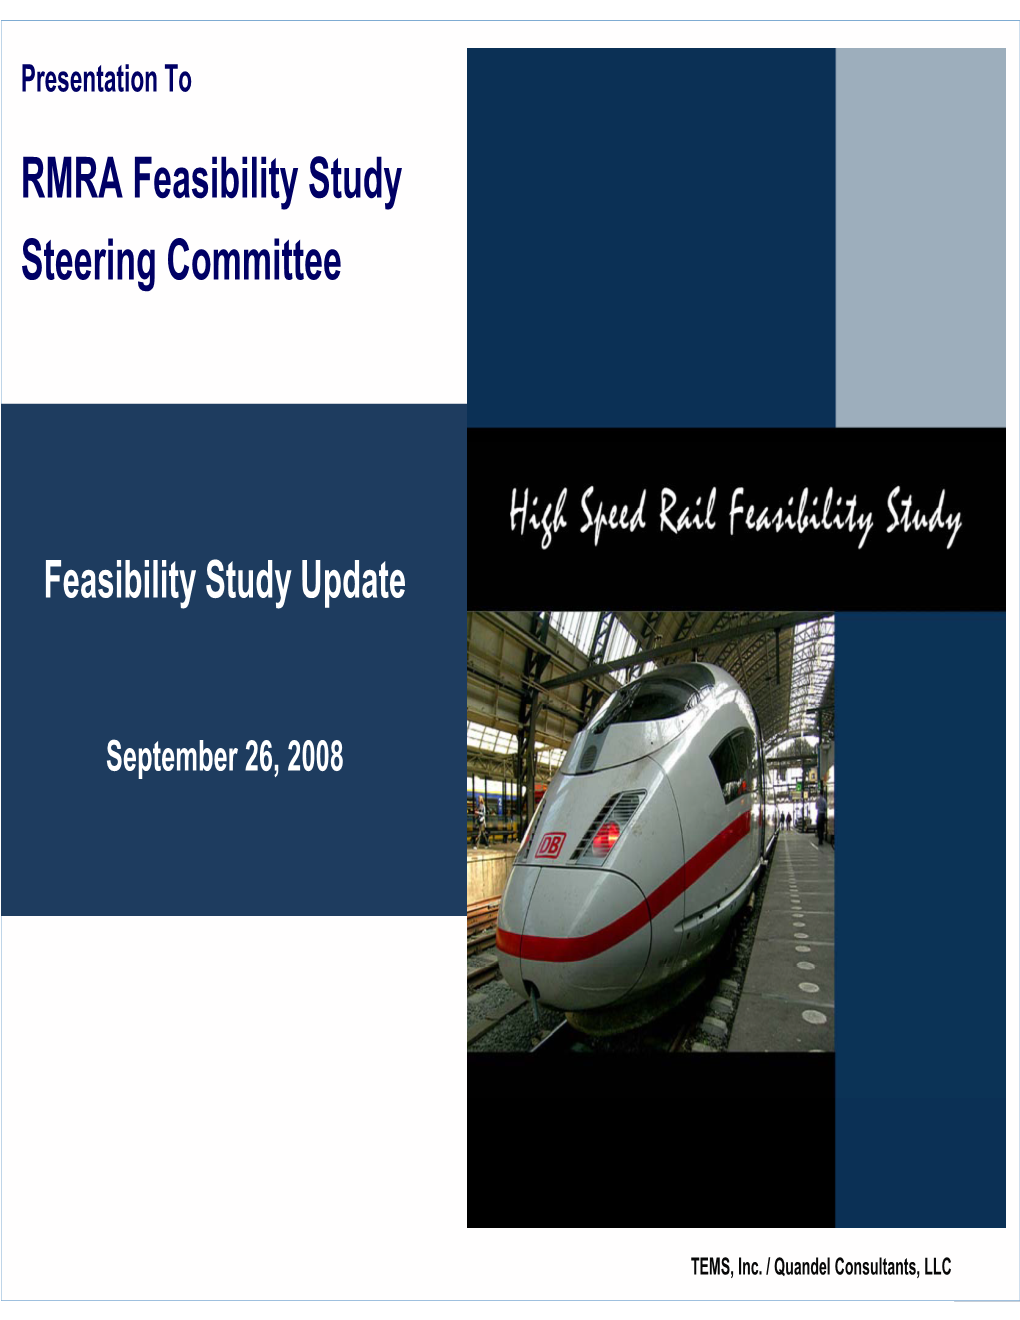 RMRA Feasibility Study Steering Committee